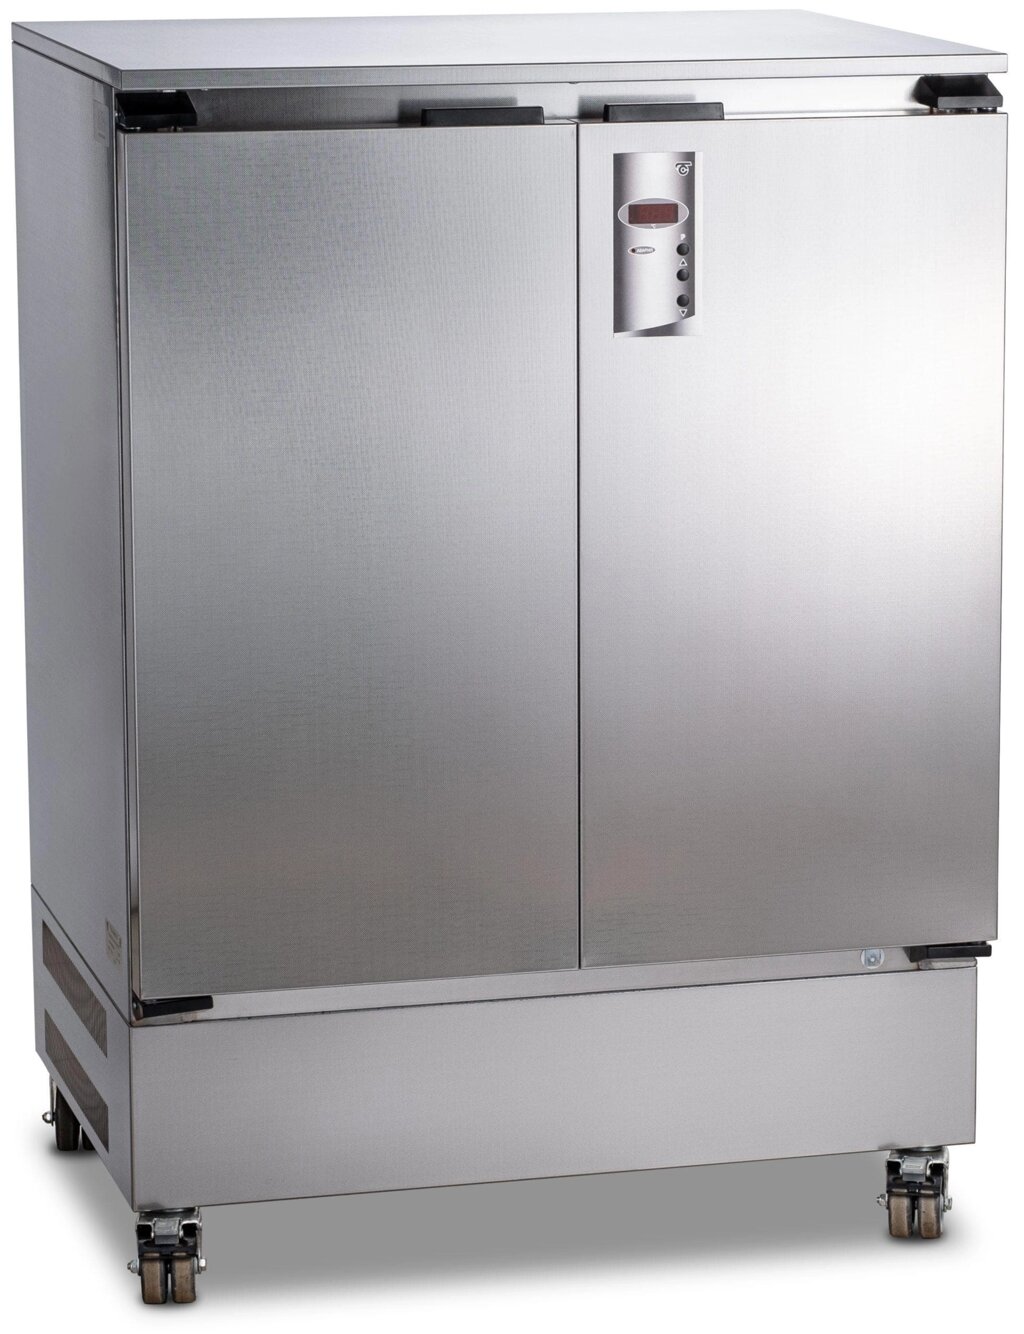 Суховоздушный термостат, 200 литров, 5-60 °С, без охлаждения, нержавеющая сталь от компании Labdevices - Лабораторное оборудование и посуда - фото 1